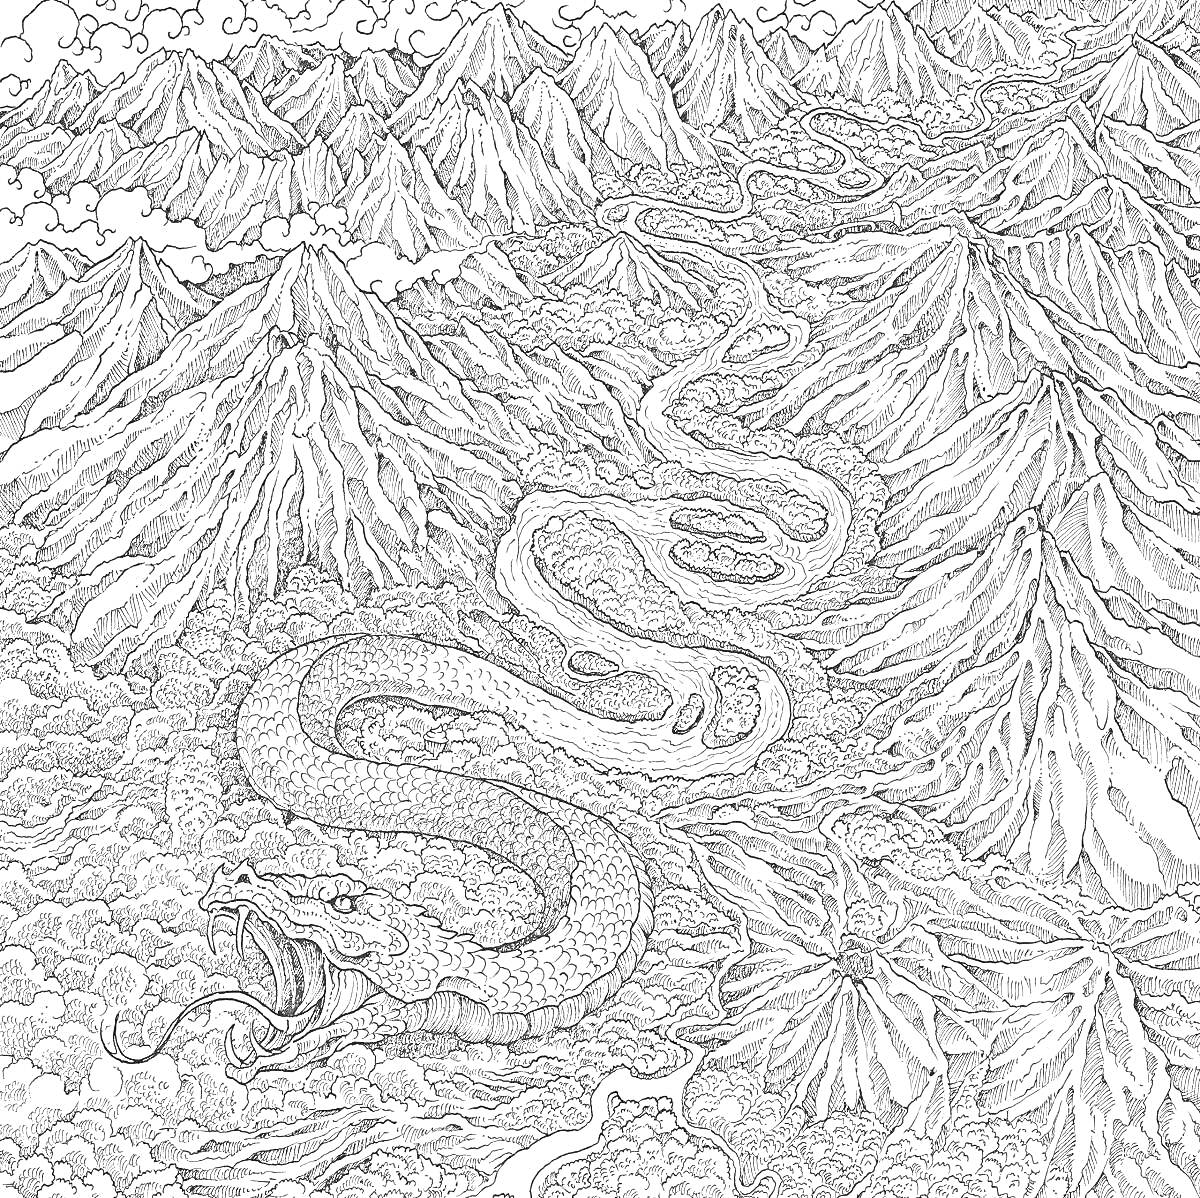 Раскраска Горный ландшафт с превращающимся в реку змеем и облаками